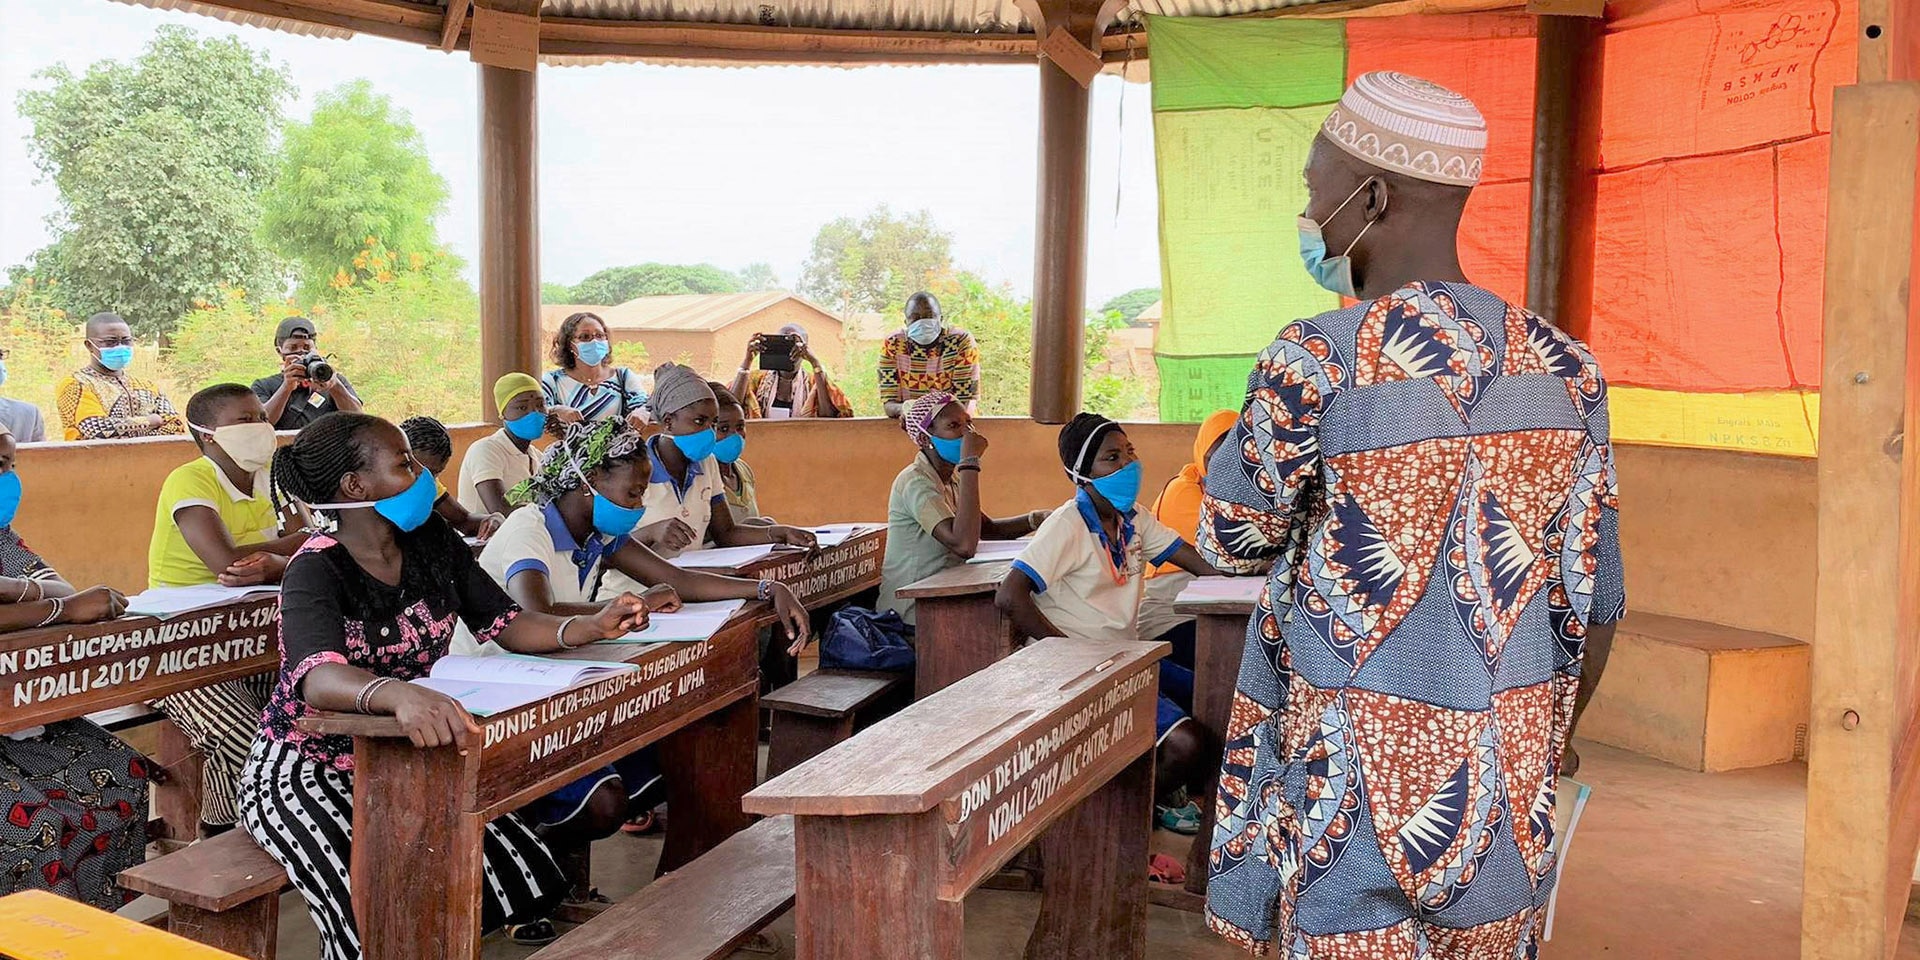  Schülerinnen und Schüler in einer Schule in Benin sitzen an Holztischen und werden von einem Lehrer unterrichtet. Das Dach des Klassenzimmers wird von Holzpfählen gestützt. 